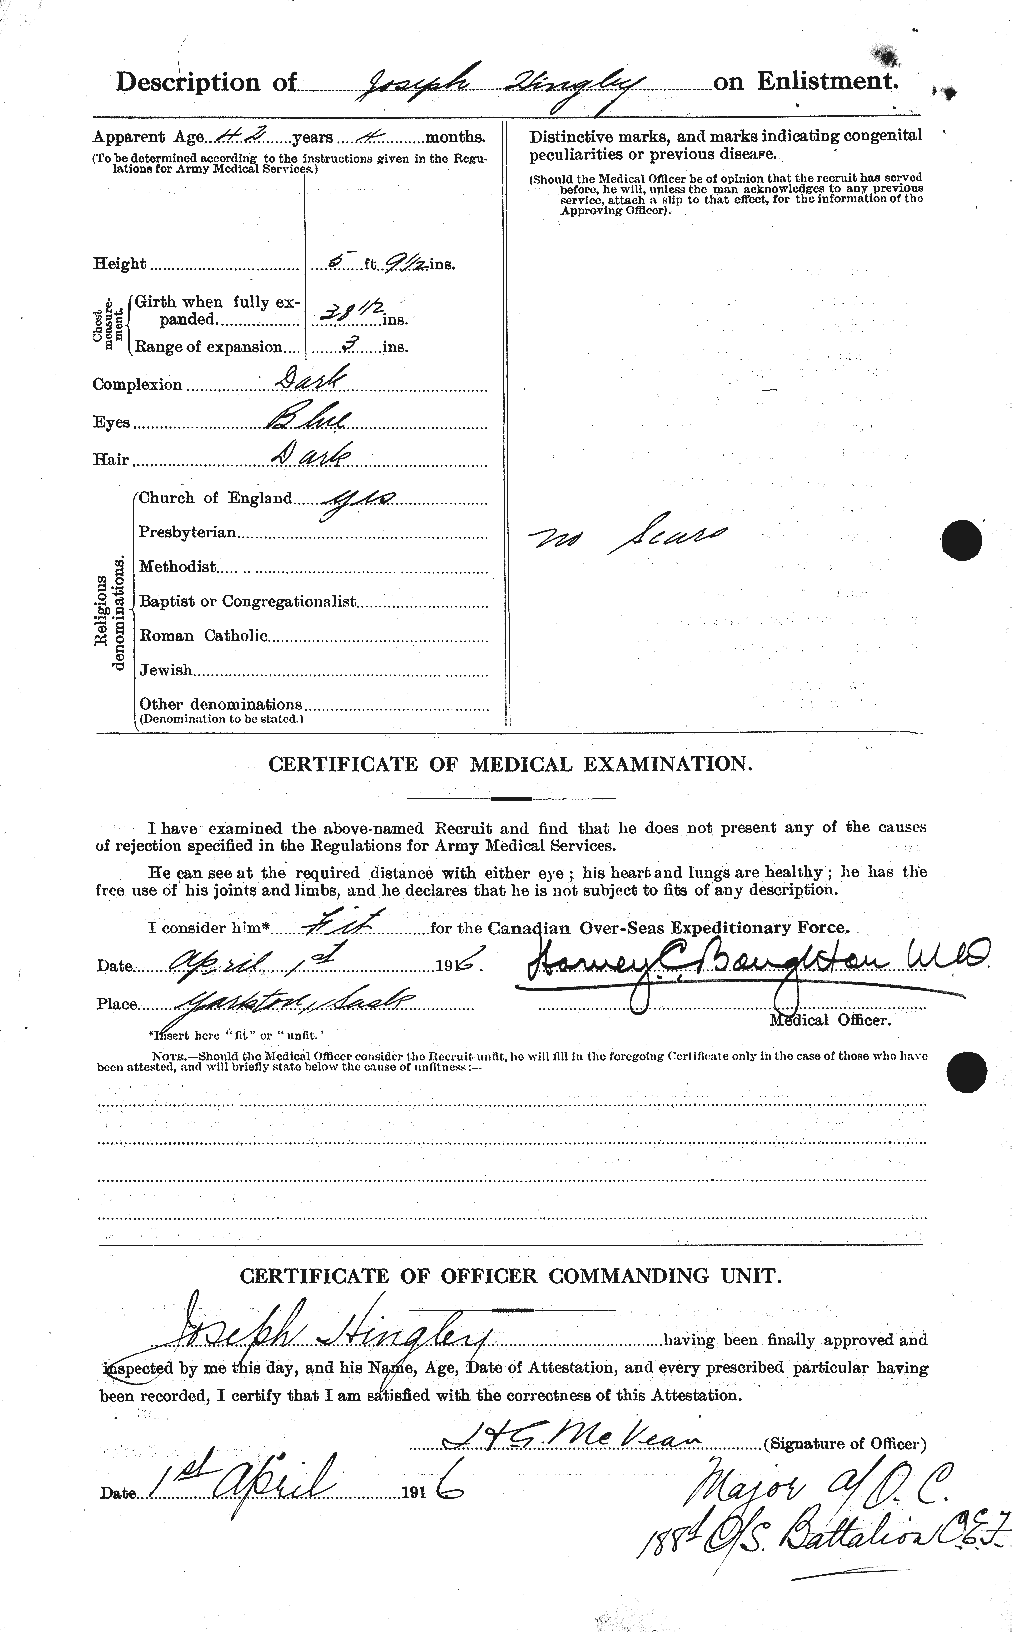 Dossiers du Personnel de la Première Guerre mondiale - CEC 394549b